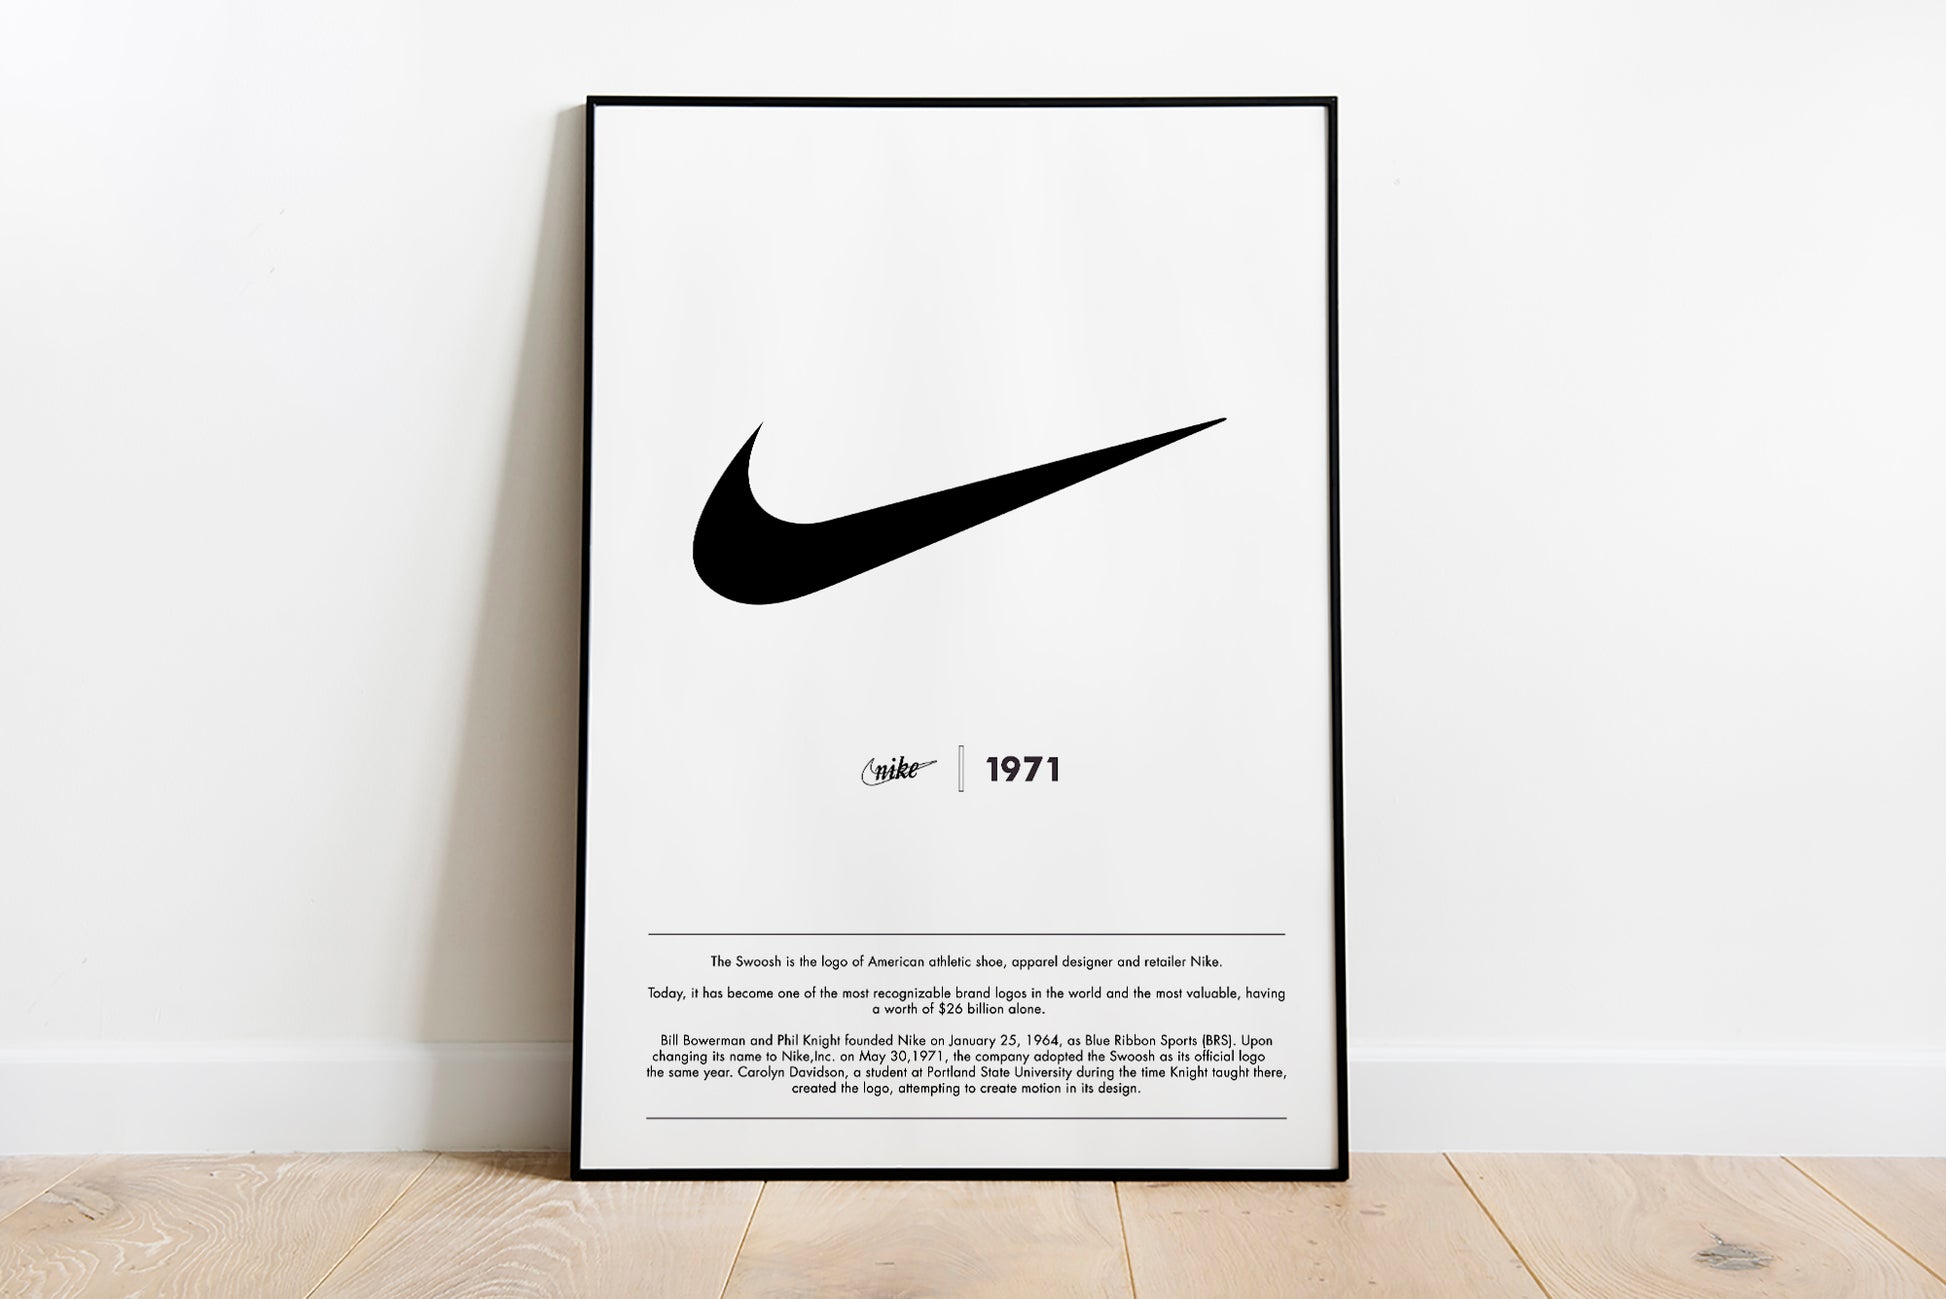 https://splashfrog.co.uk/cdn/shop/products/NikePrintNewframed11.jpg?v=1669518116&width=1946